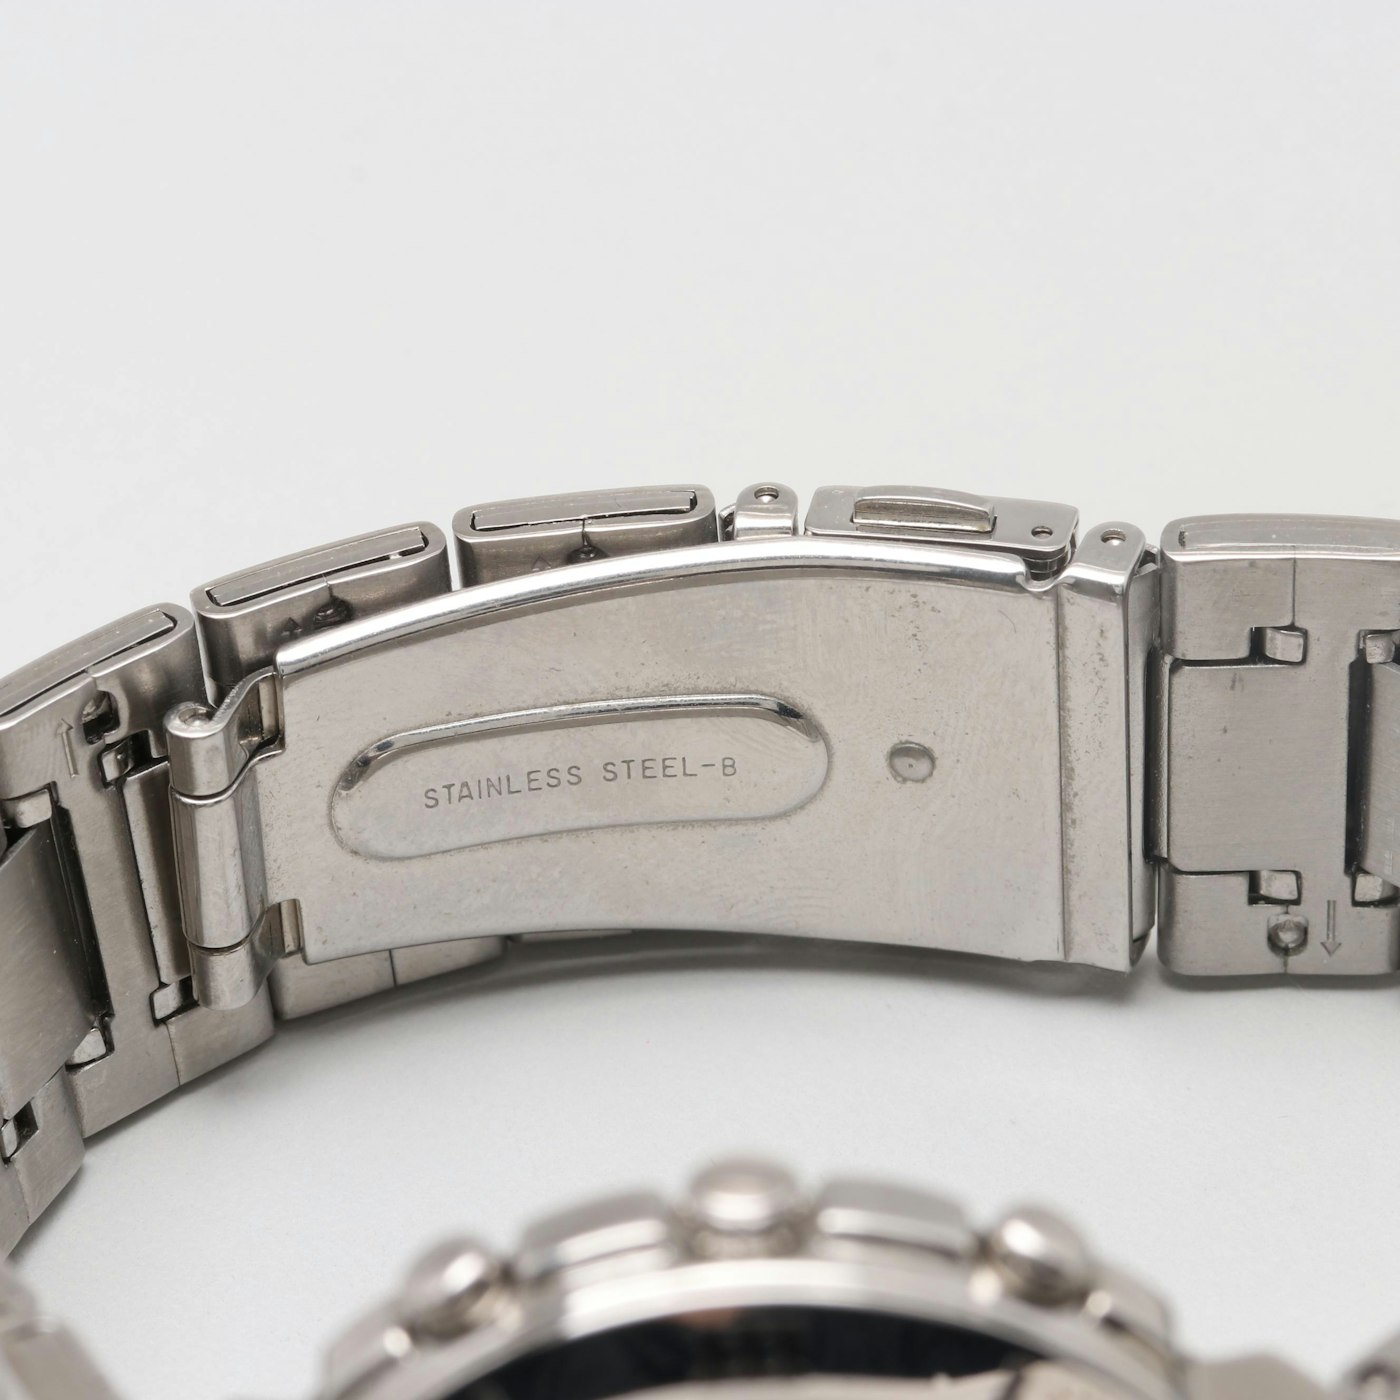 Seiko GLX Stainless Steel Chronograph Wristwatch With Date Window | EBTH